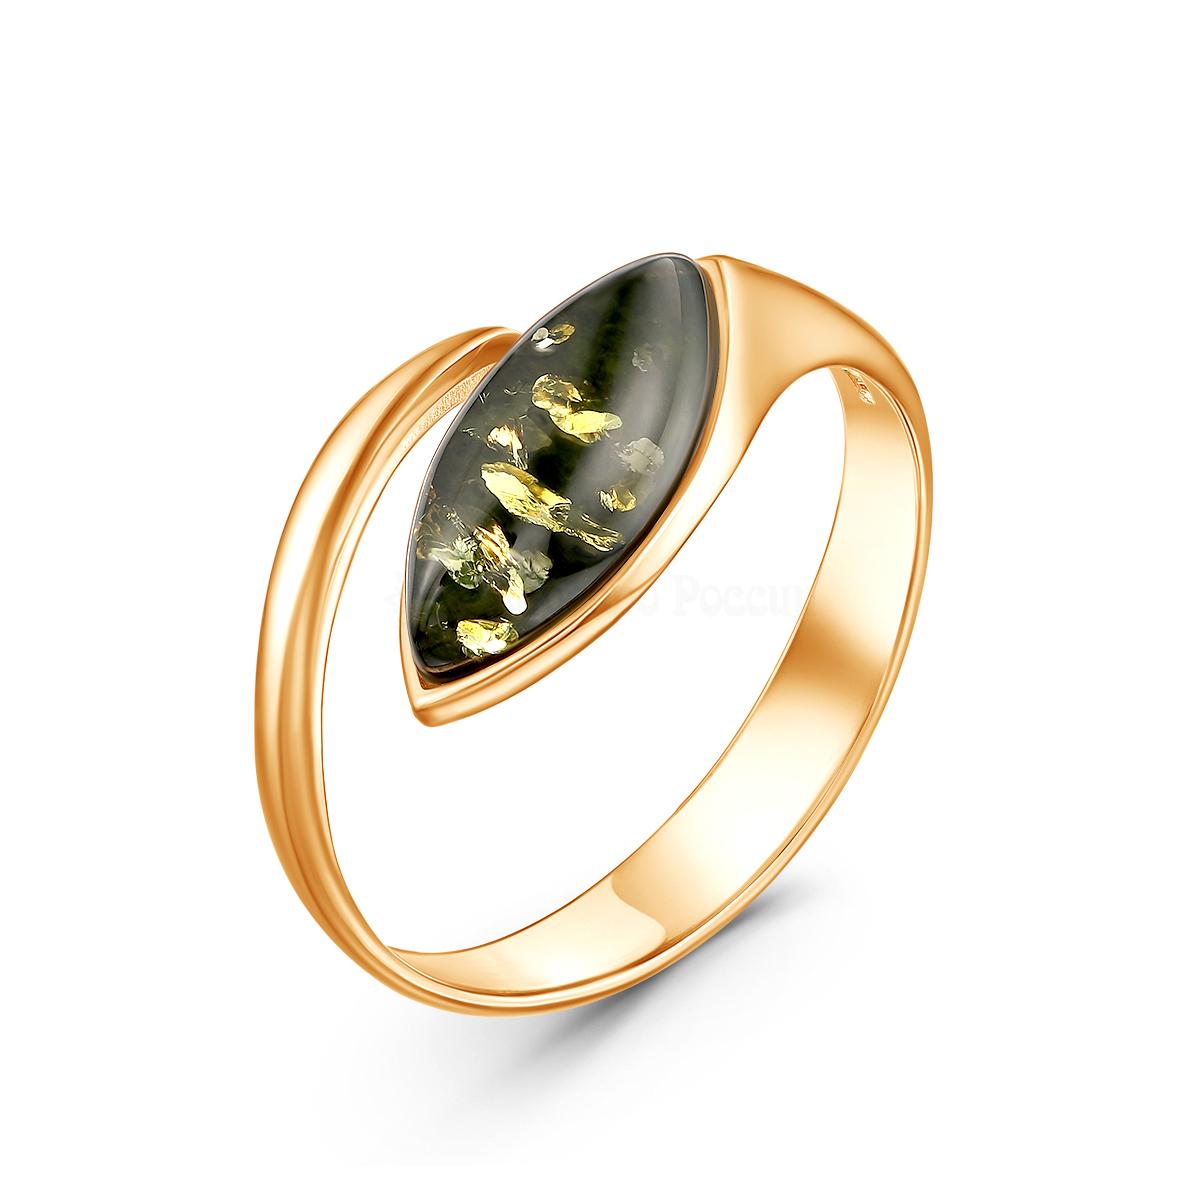 Кольцо разъёмное из золочёного серебра с натуральным прессованным янтарём 2100511203